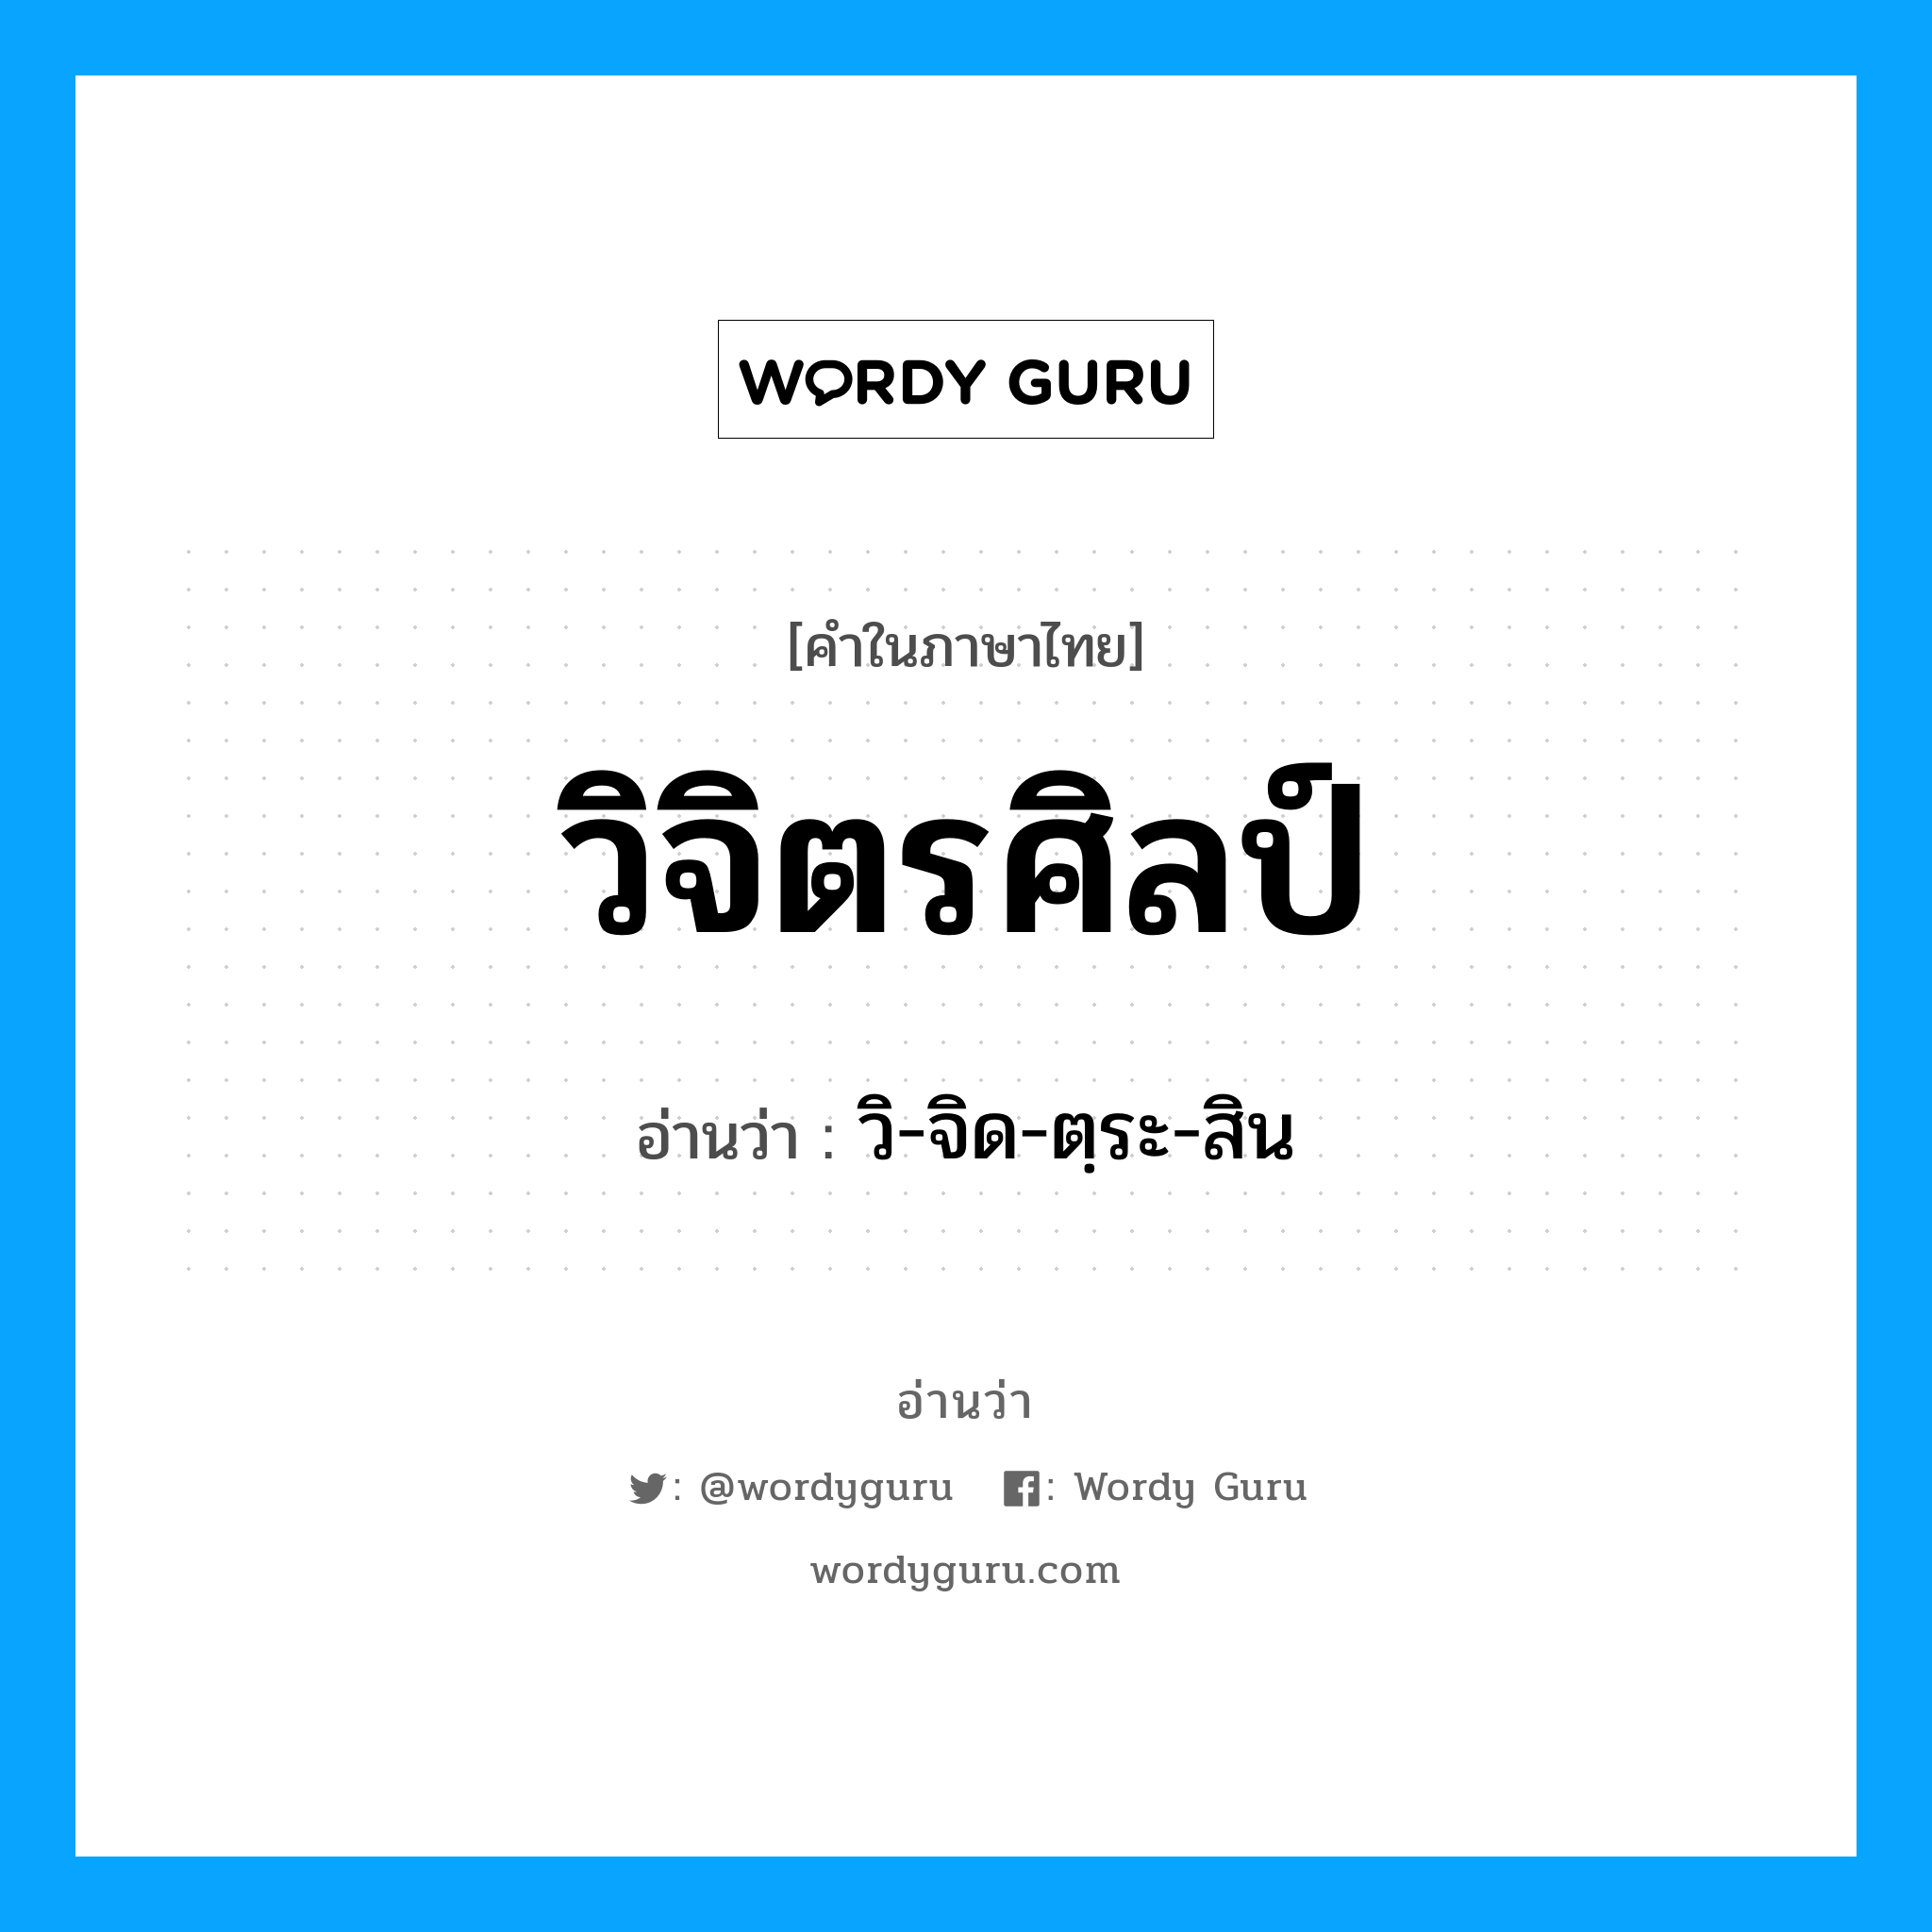 วิ-จิด-ตฺระ-สิน เป็นคำอ่านของคำไหน?, คำในภาษาไทย วิ-จิด-ตฺระ-สิน อ่านว่า วิจิตรศิลป์